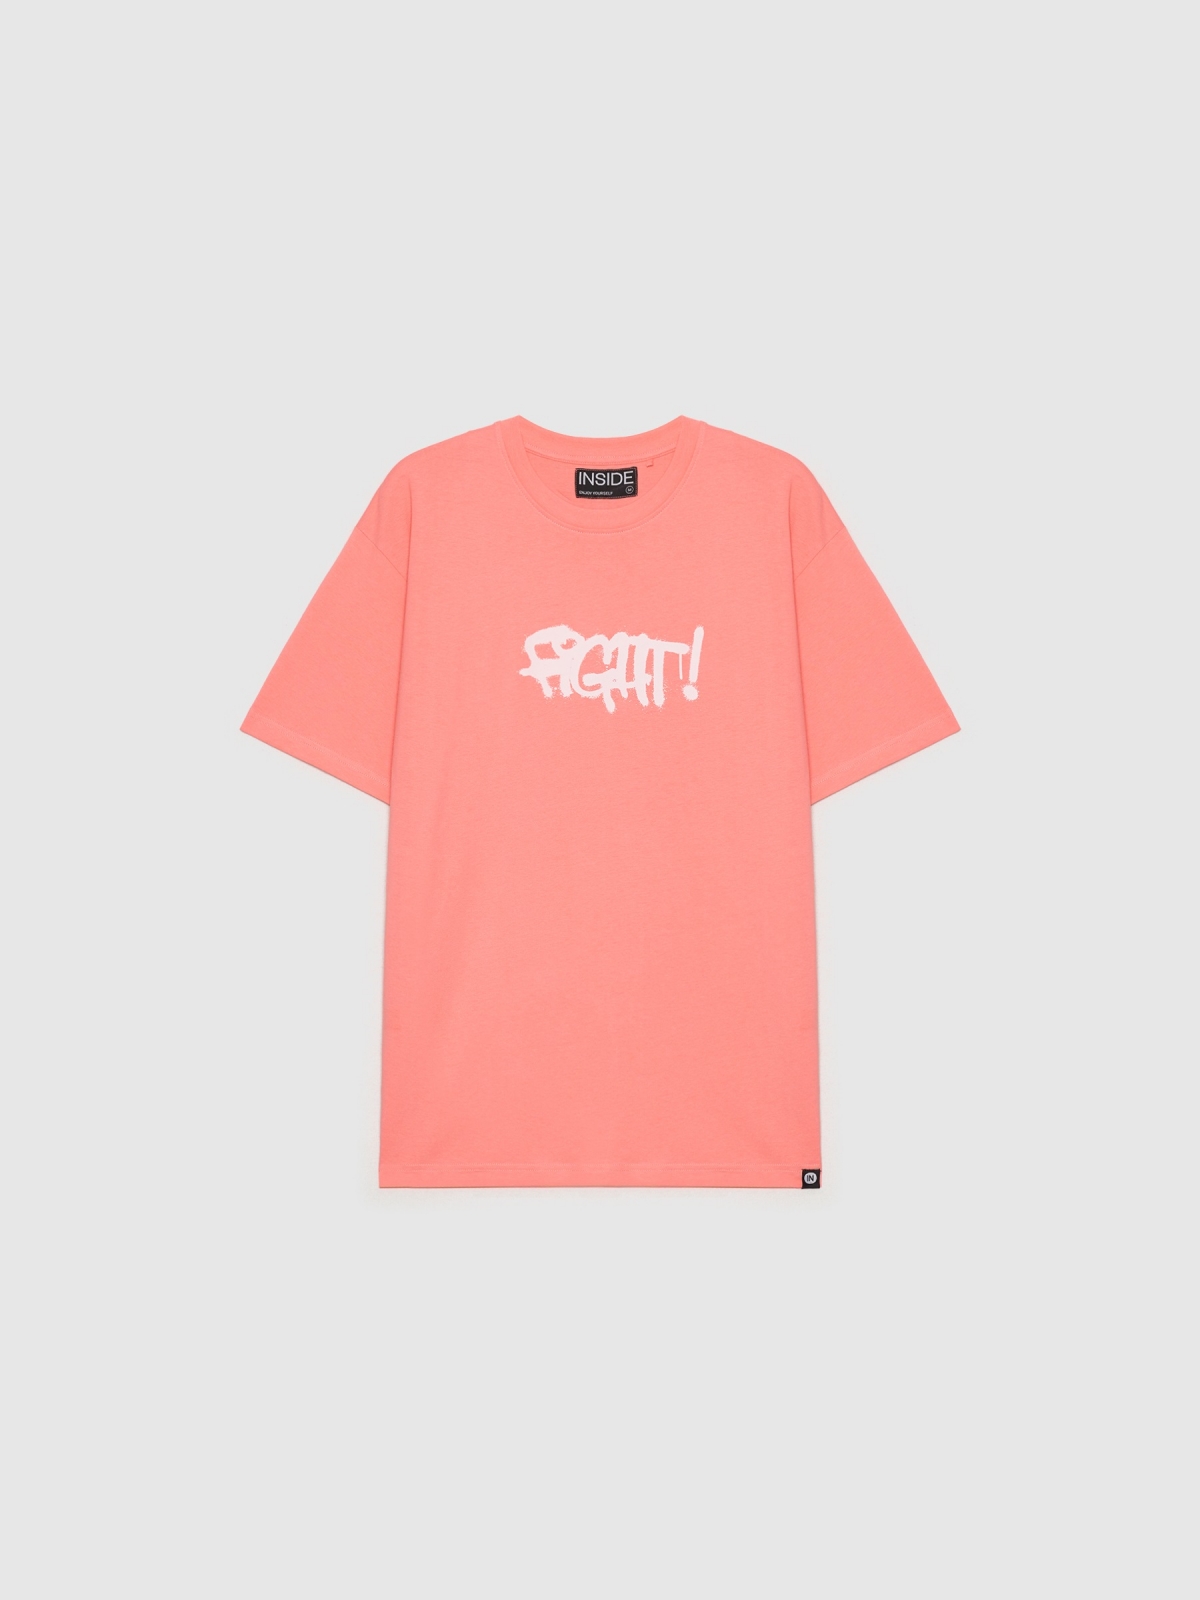  Camiseta Fight! rosa